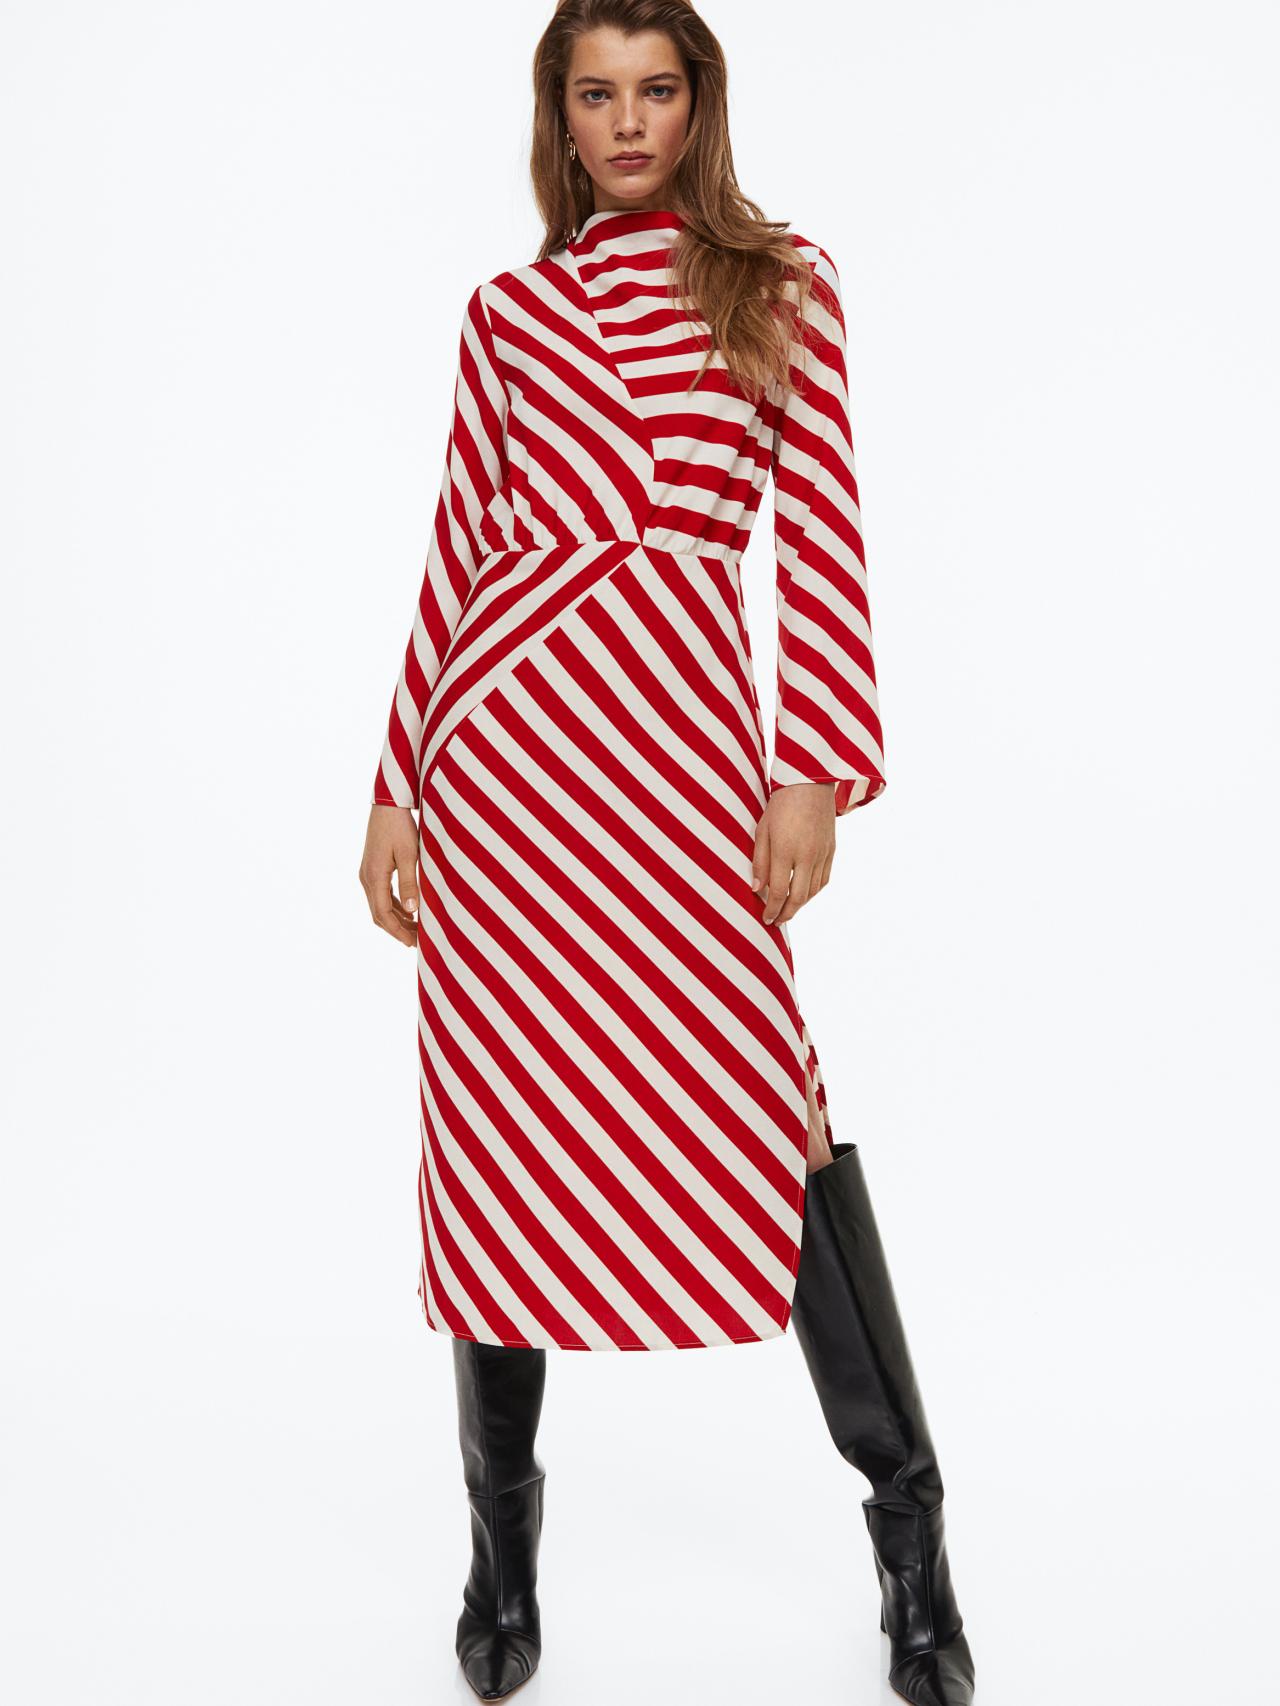 Dos lookazos de rayas y un vestido monocolor: prendas H&M serán esta temporada